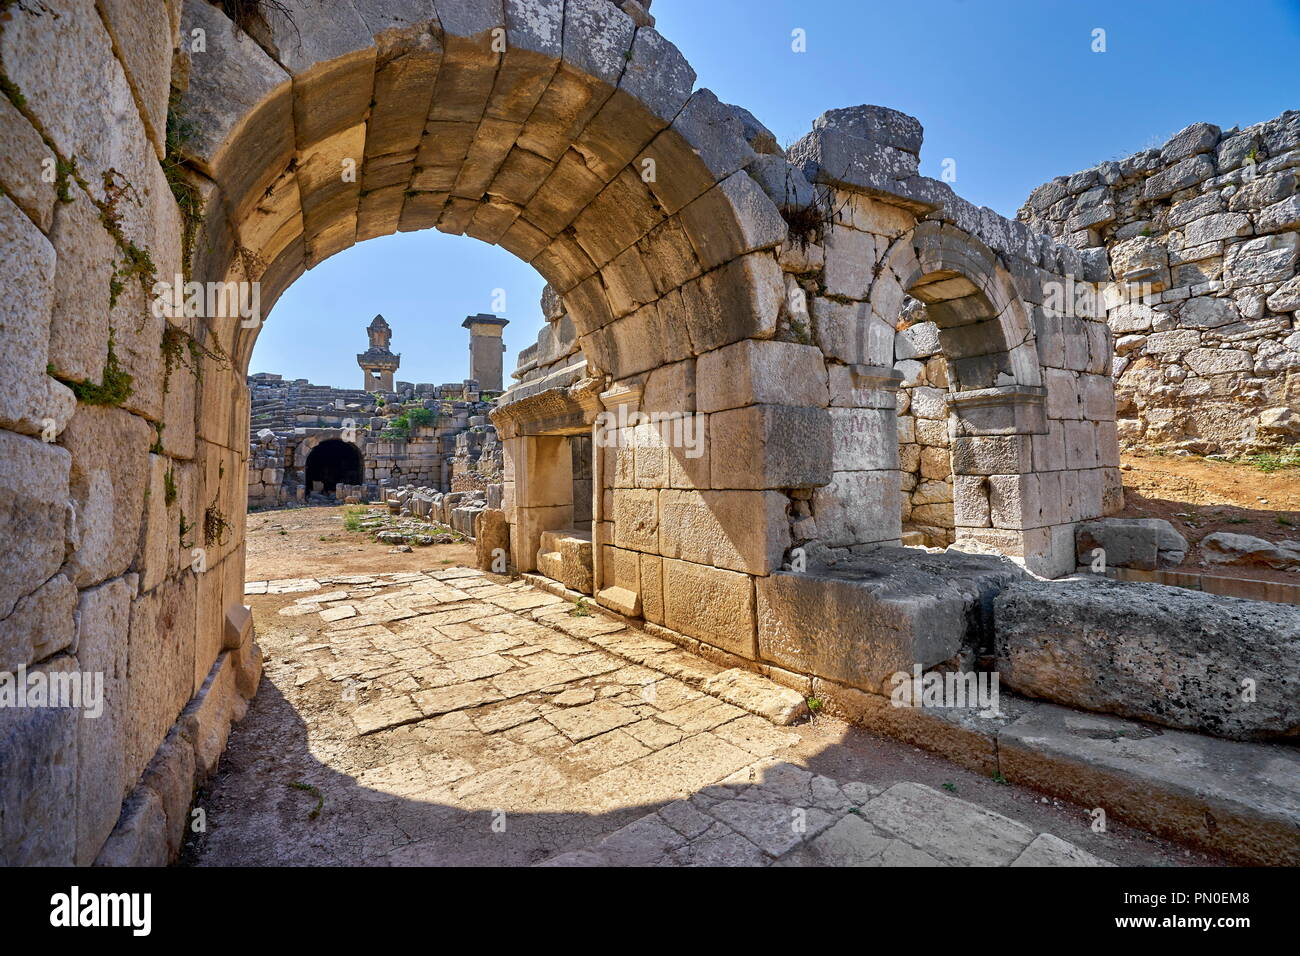 Ruine de l'amphithéâtre romain, Xanthos, Turquie Banque D'Images